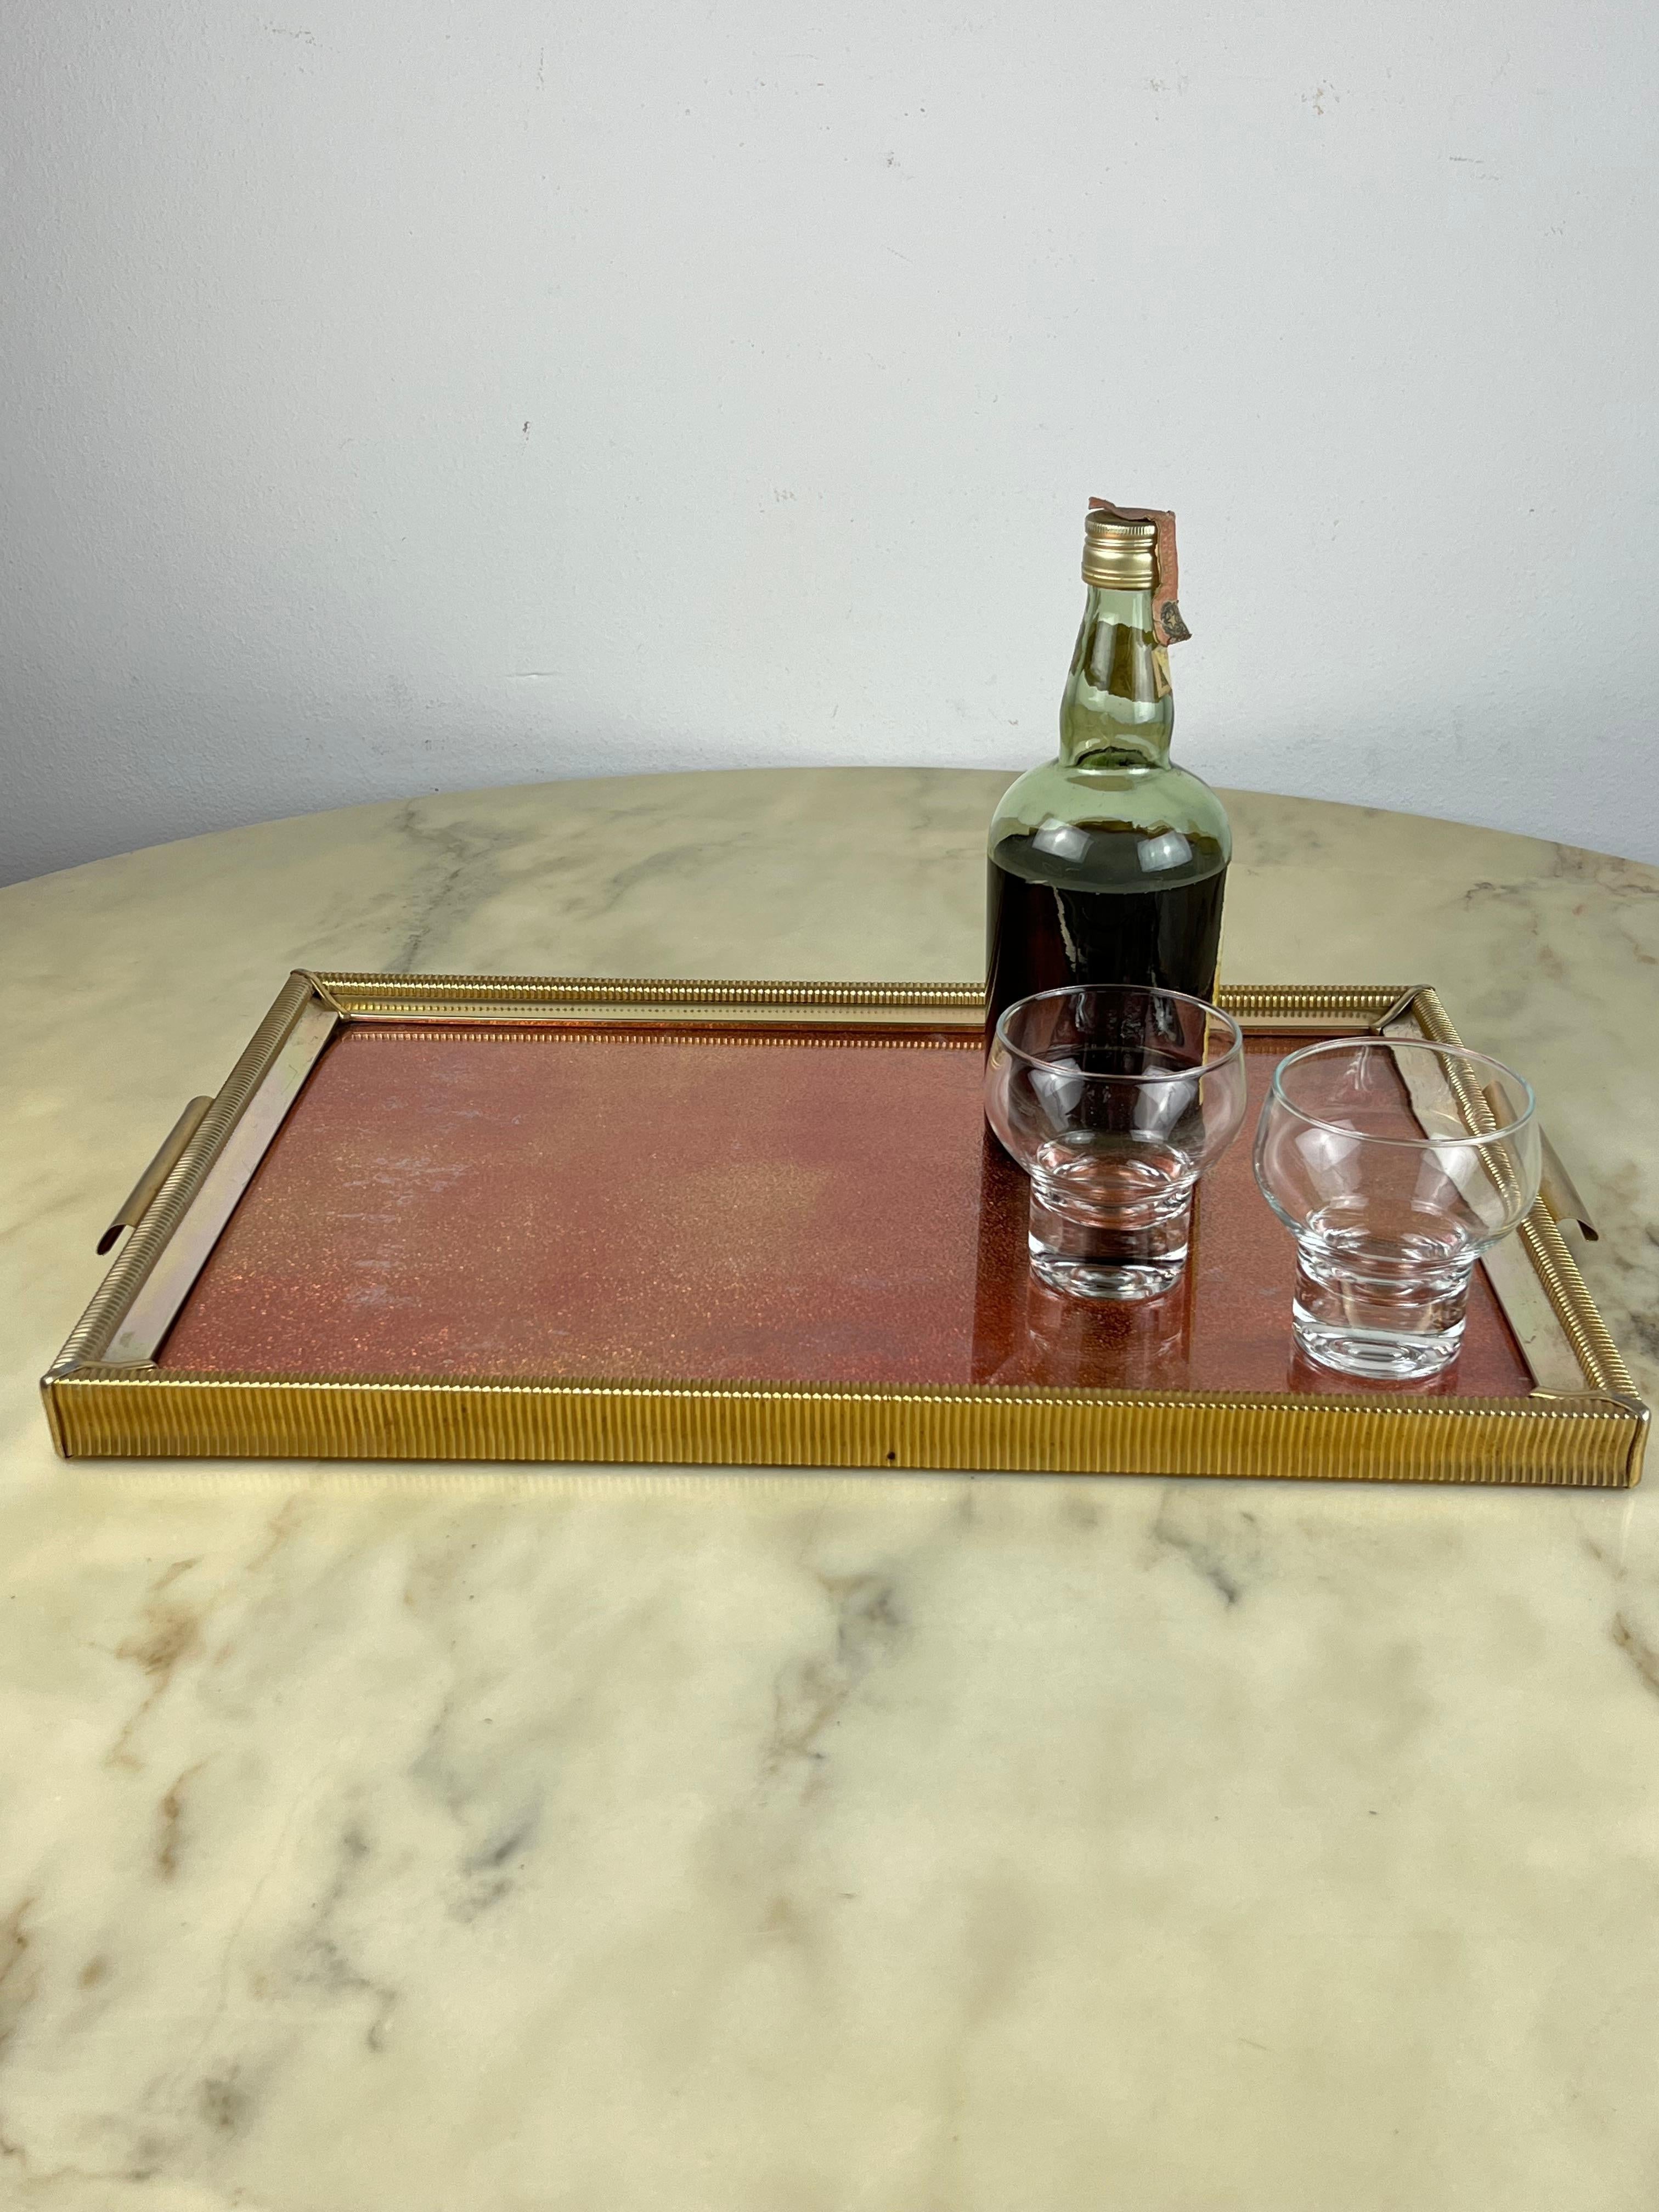 Großes handgefertigtes Tablett, Italien, 1950er Jahre
Er ist mit goldenem Metall beschichtet und hat eine rote Glasplatte.
Intakt und in gutem Zustand.